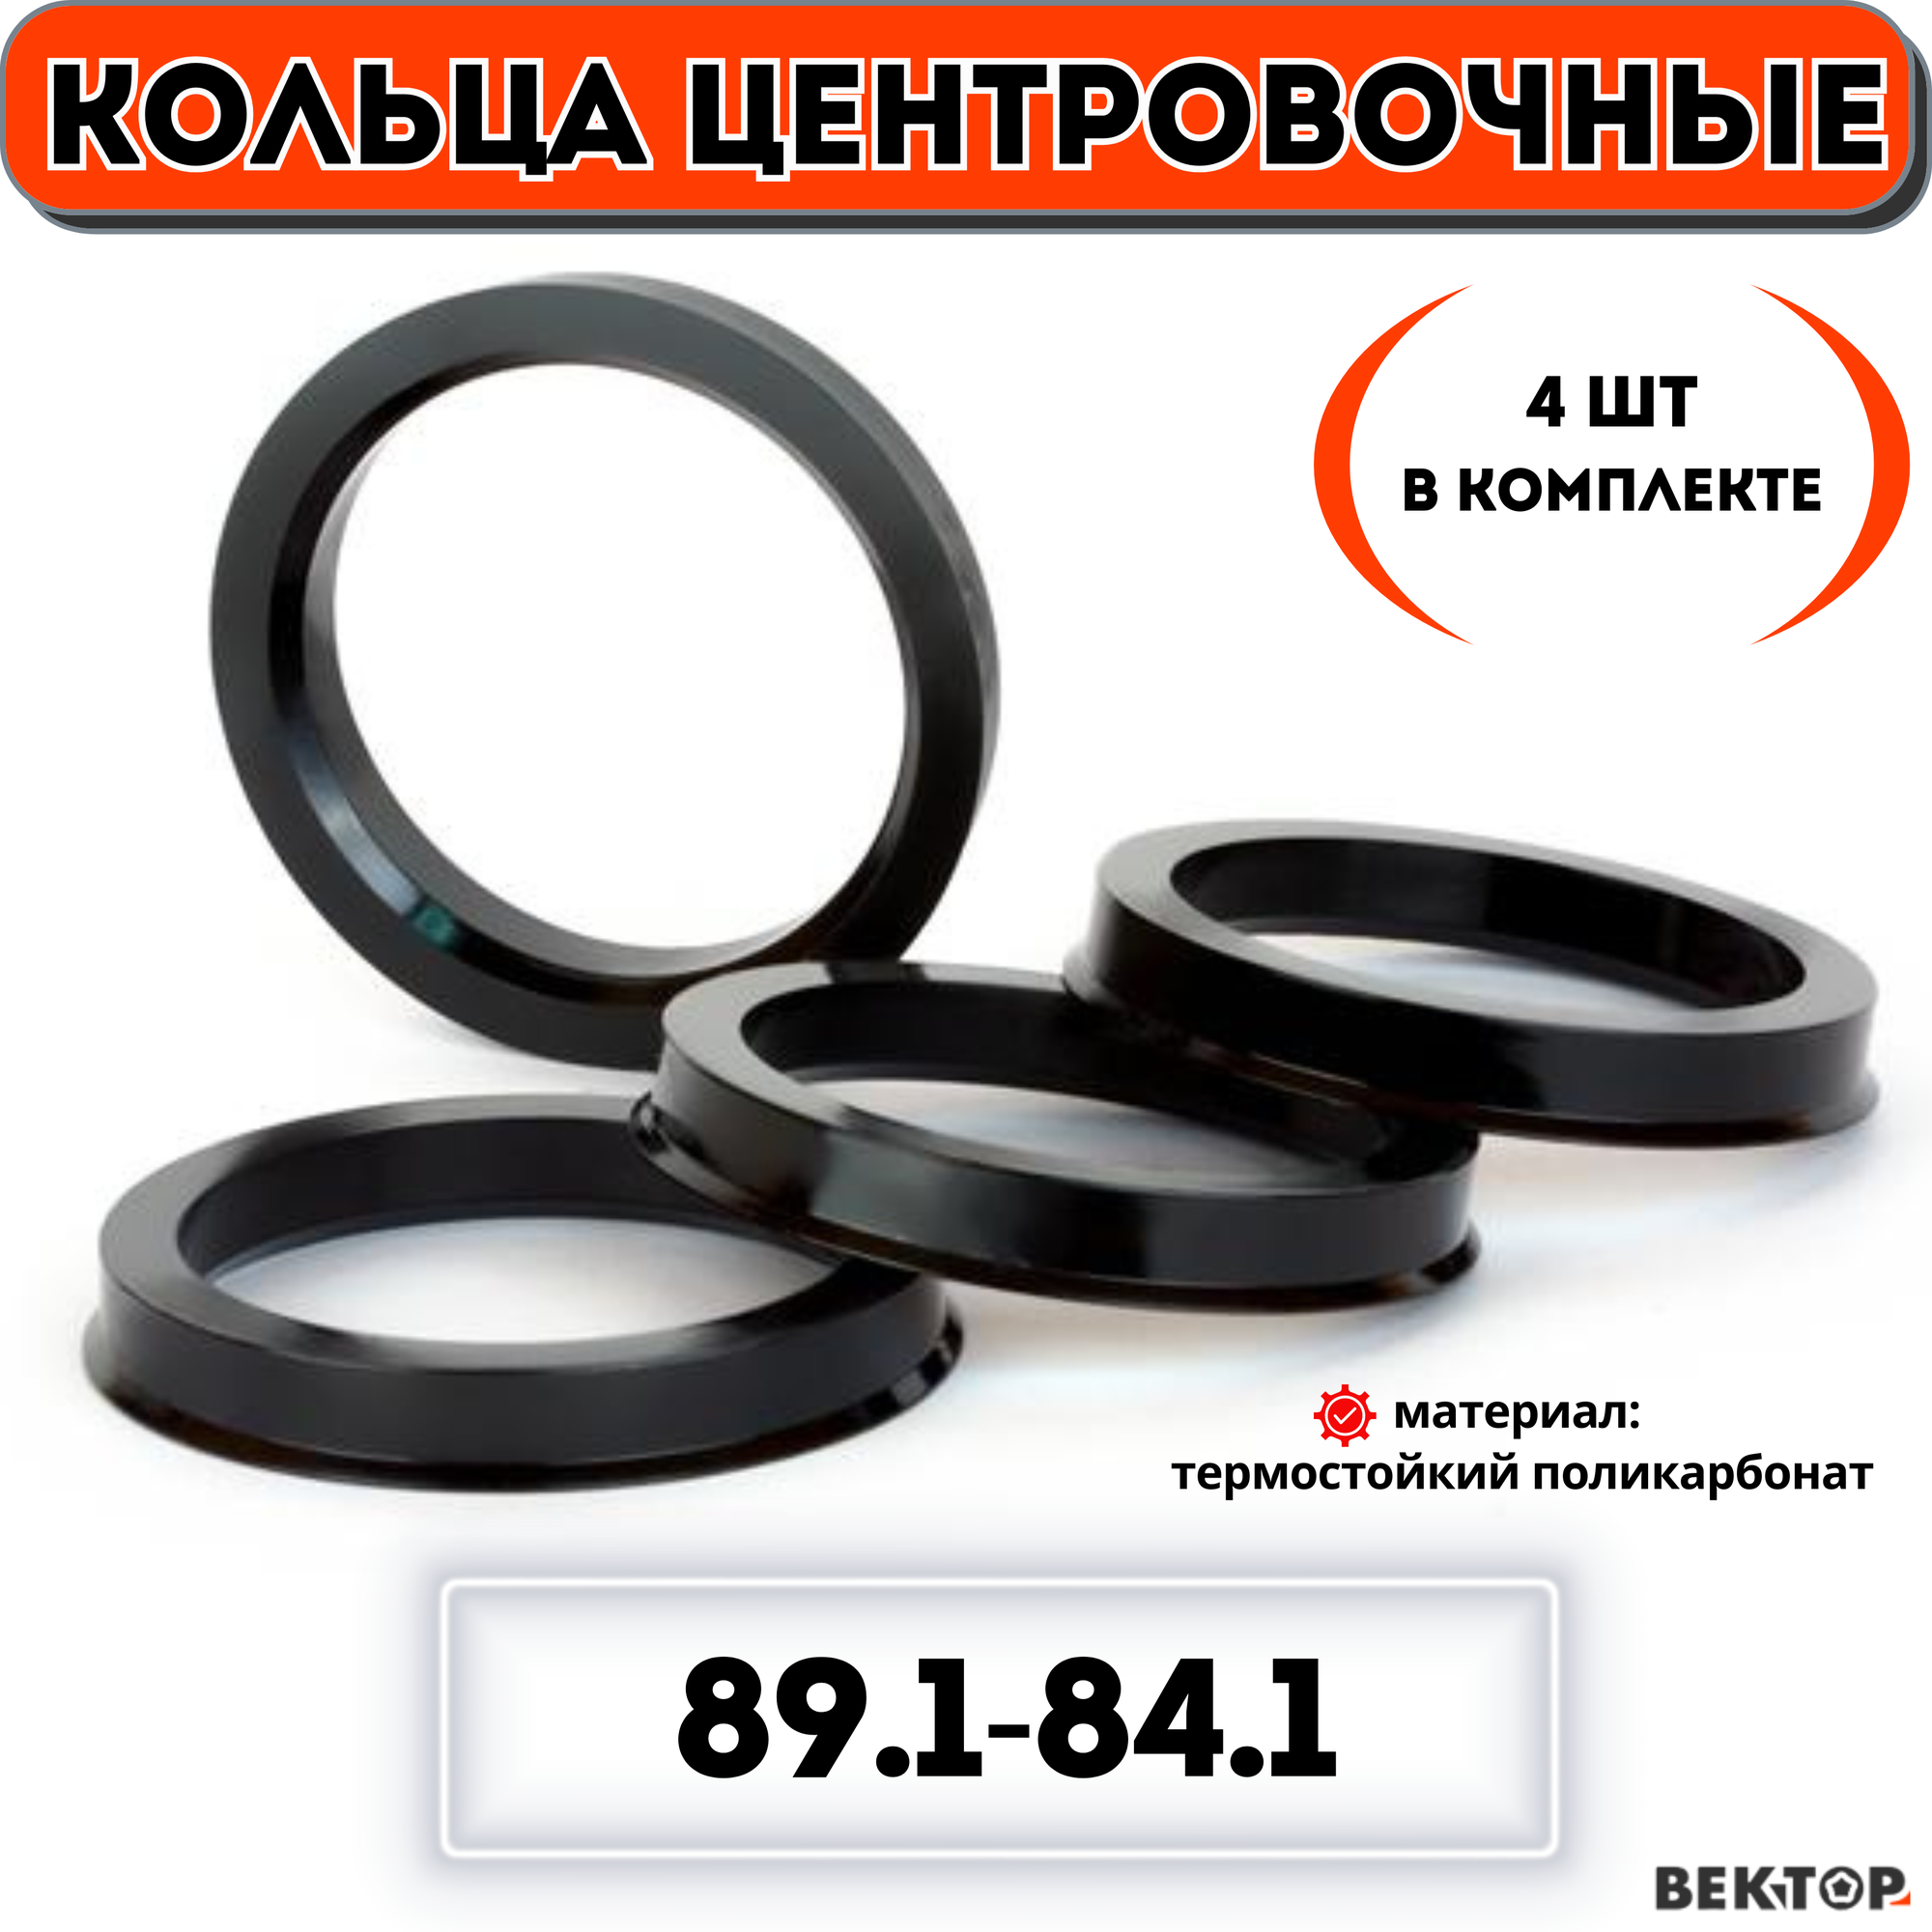 Кольца центровочные для автомобильных дисков 89,1-84,1 (комплект из 4 шт.)